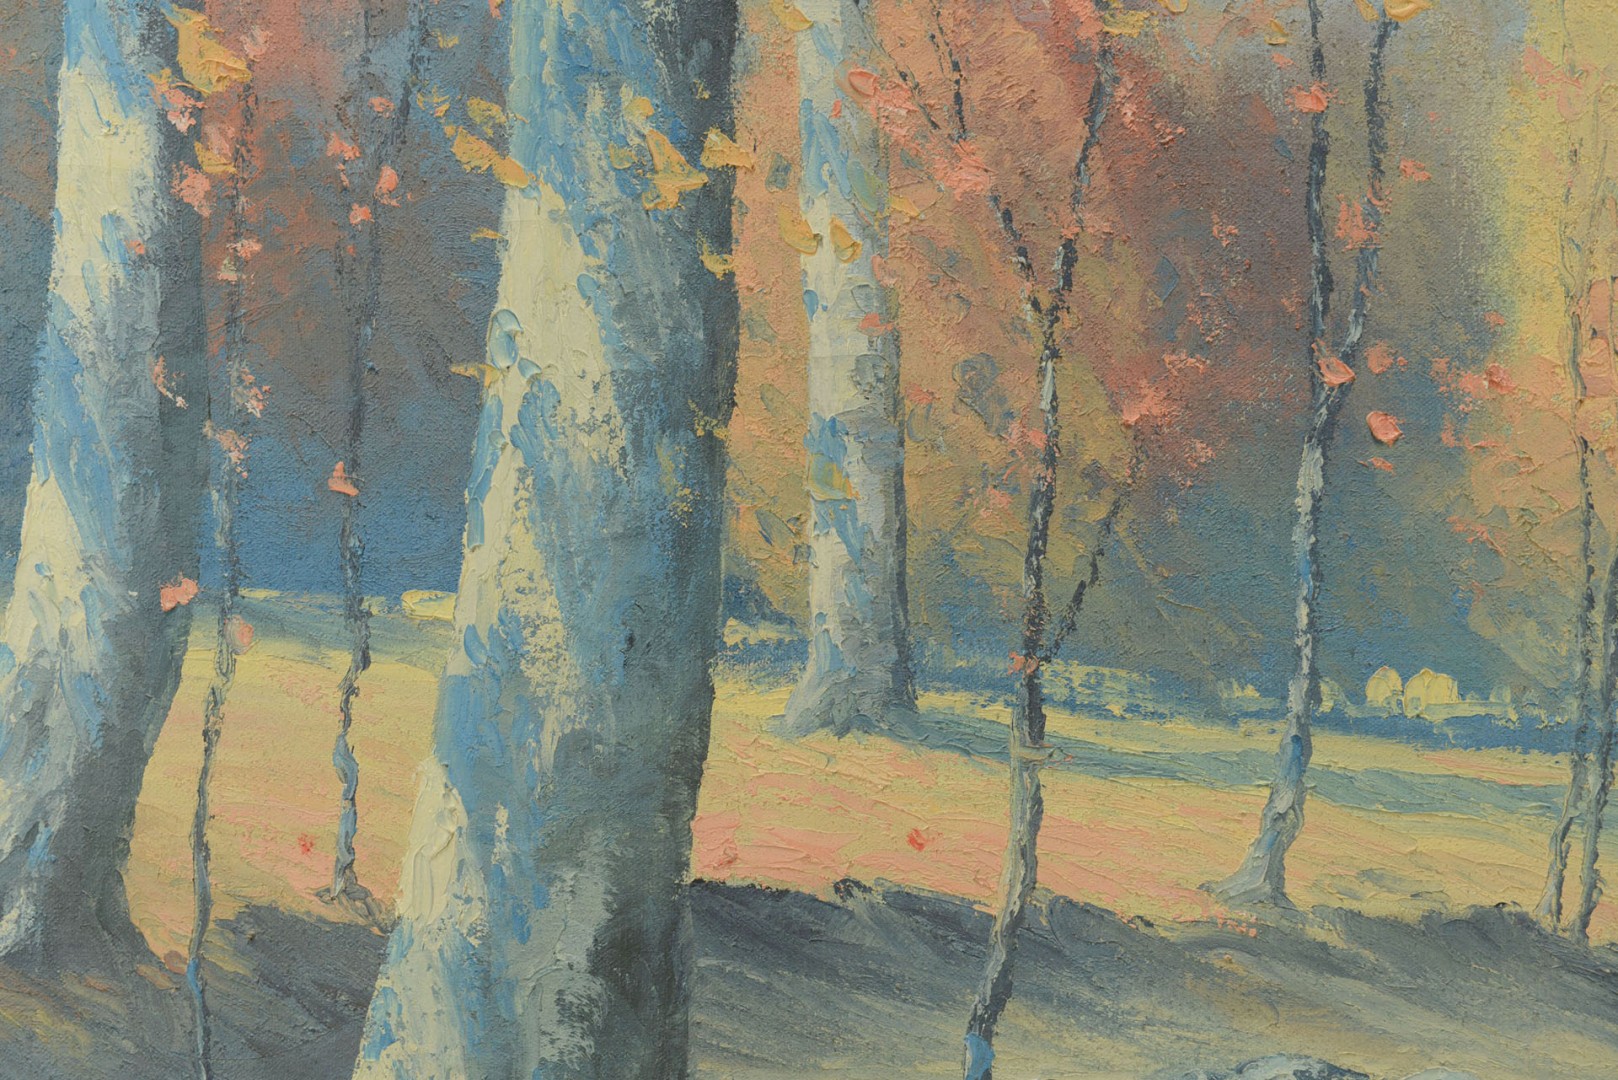 Lot 371: W.E. Ashbaugh, Oil on Canvas Landscape